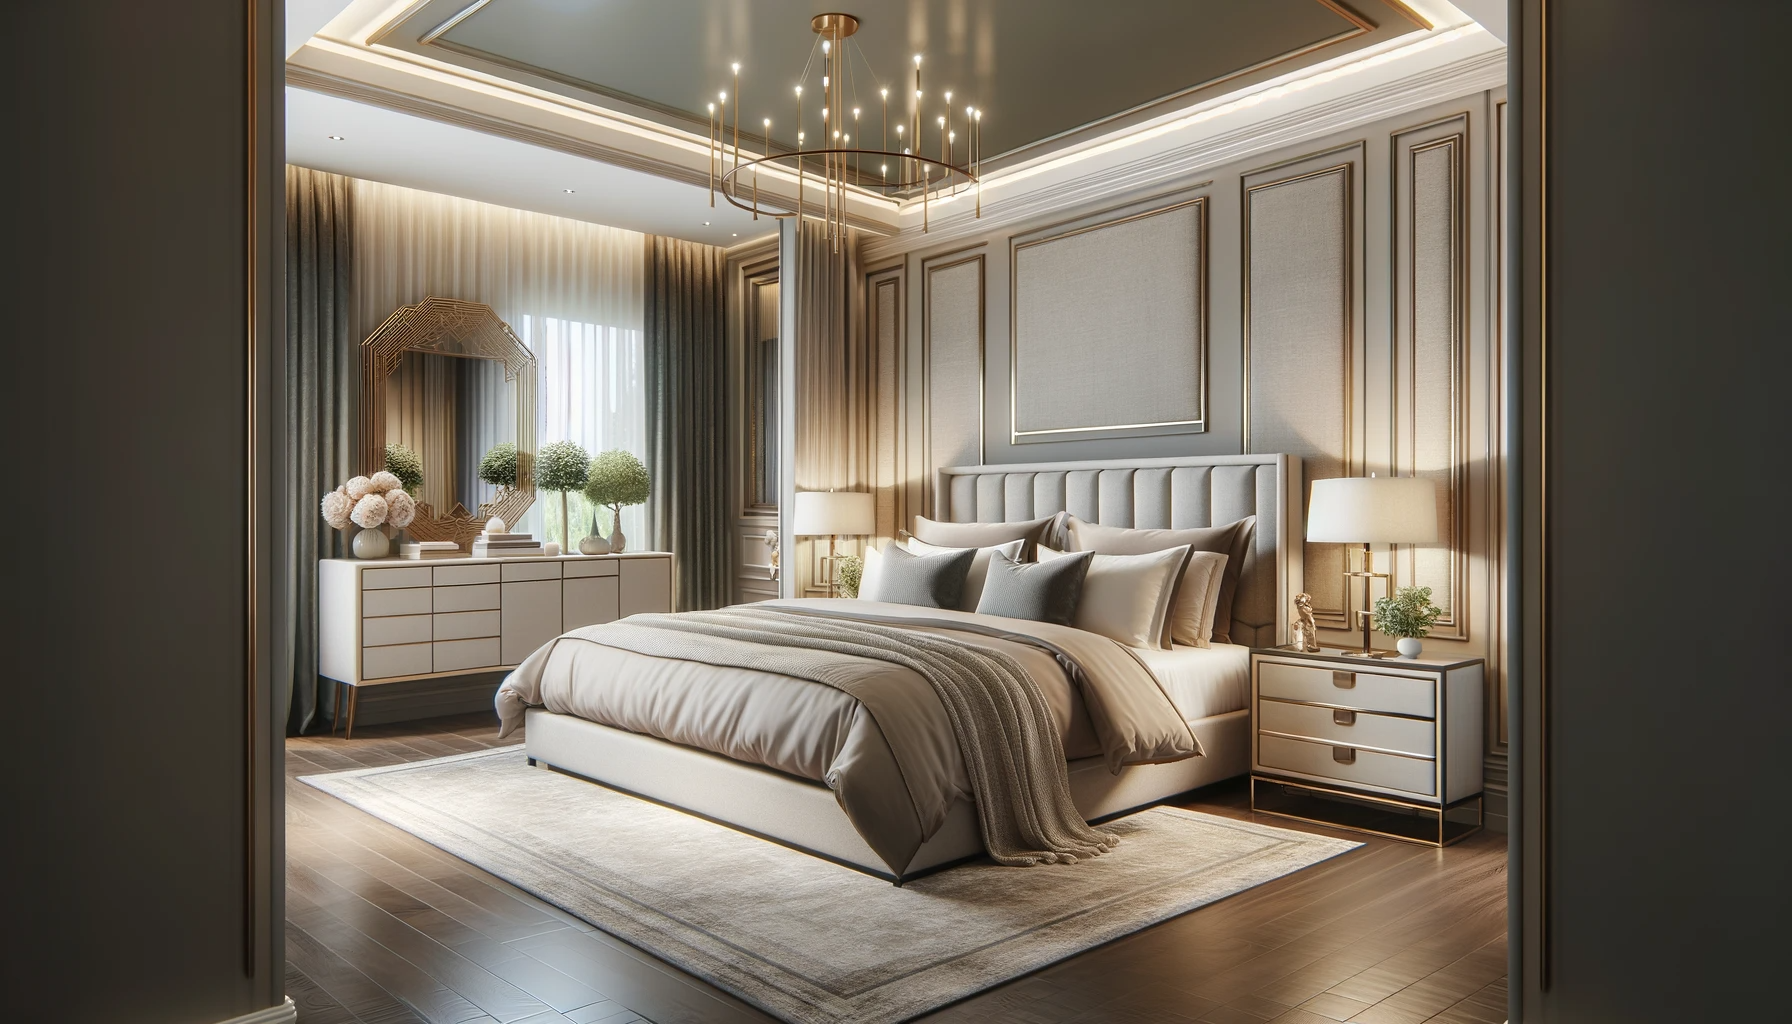 תמונה של חדר שינה מעוצב באלגנטיות המציג ערכת צבעים הרמונית וריהוט מסוגנן.